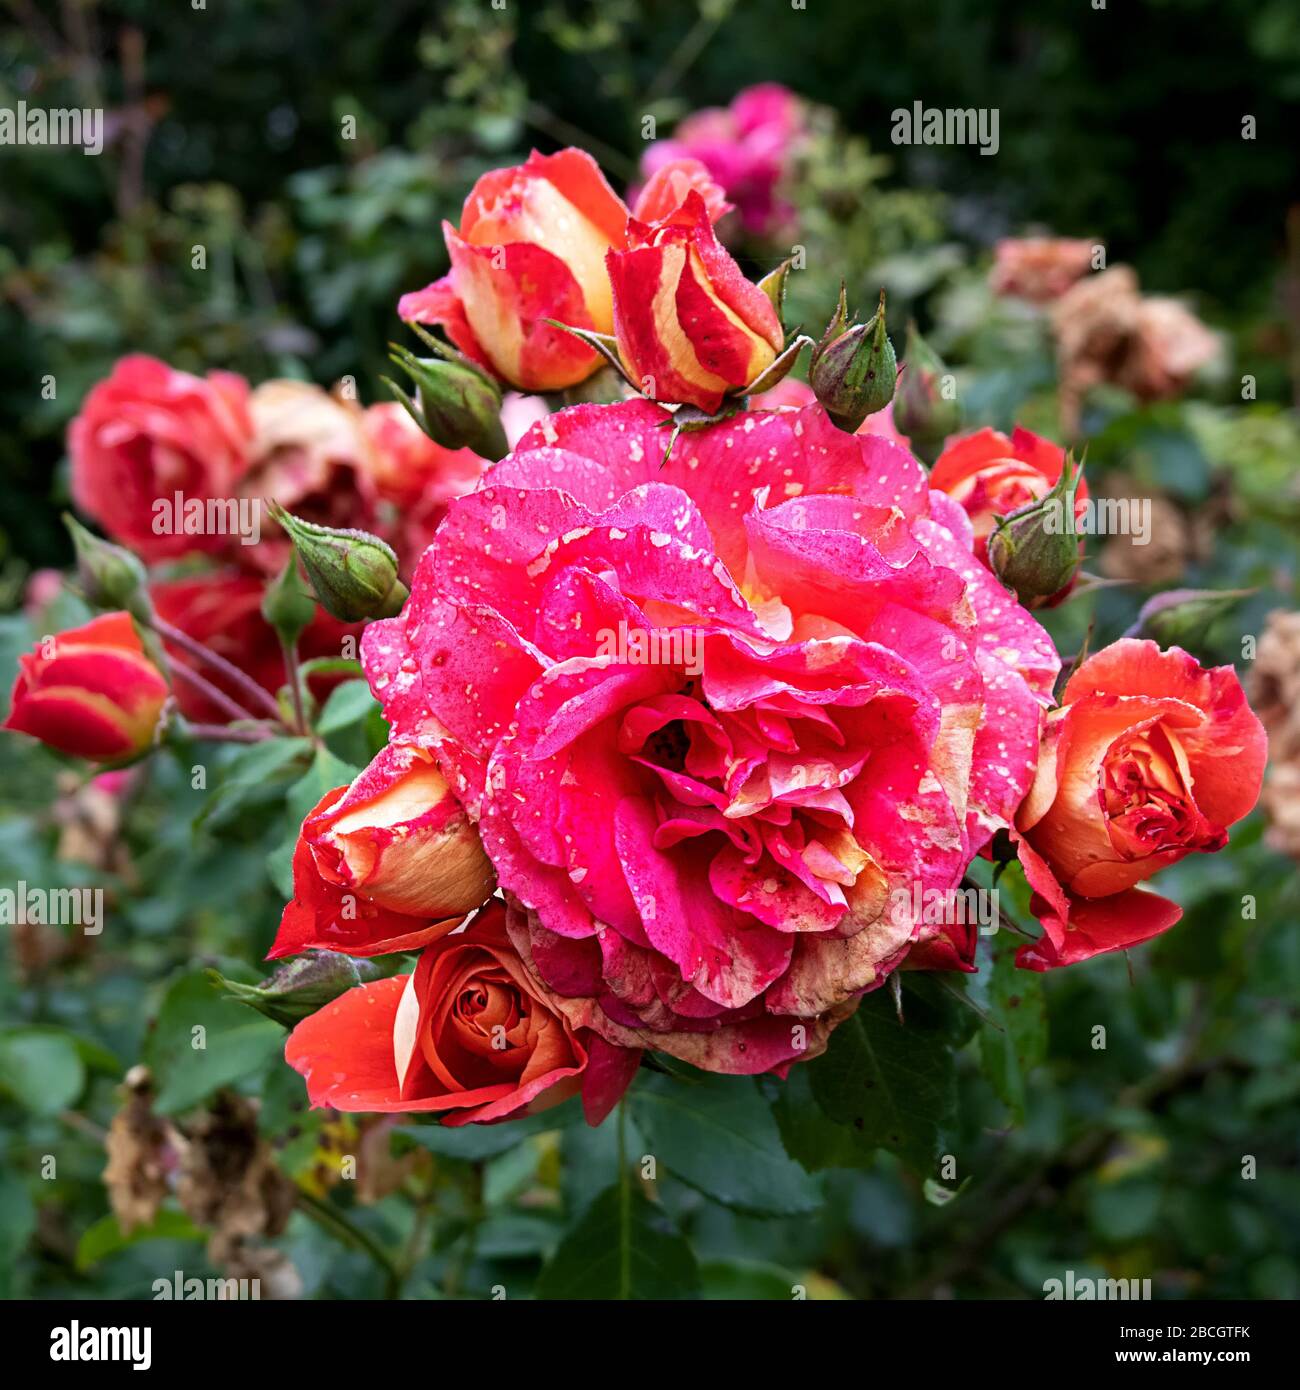 Splendor of roses in the garden Stock Photo